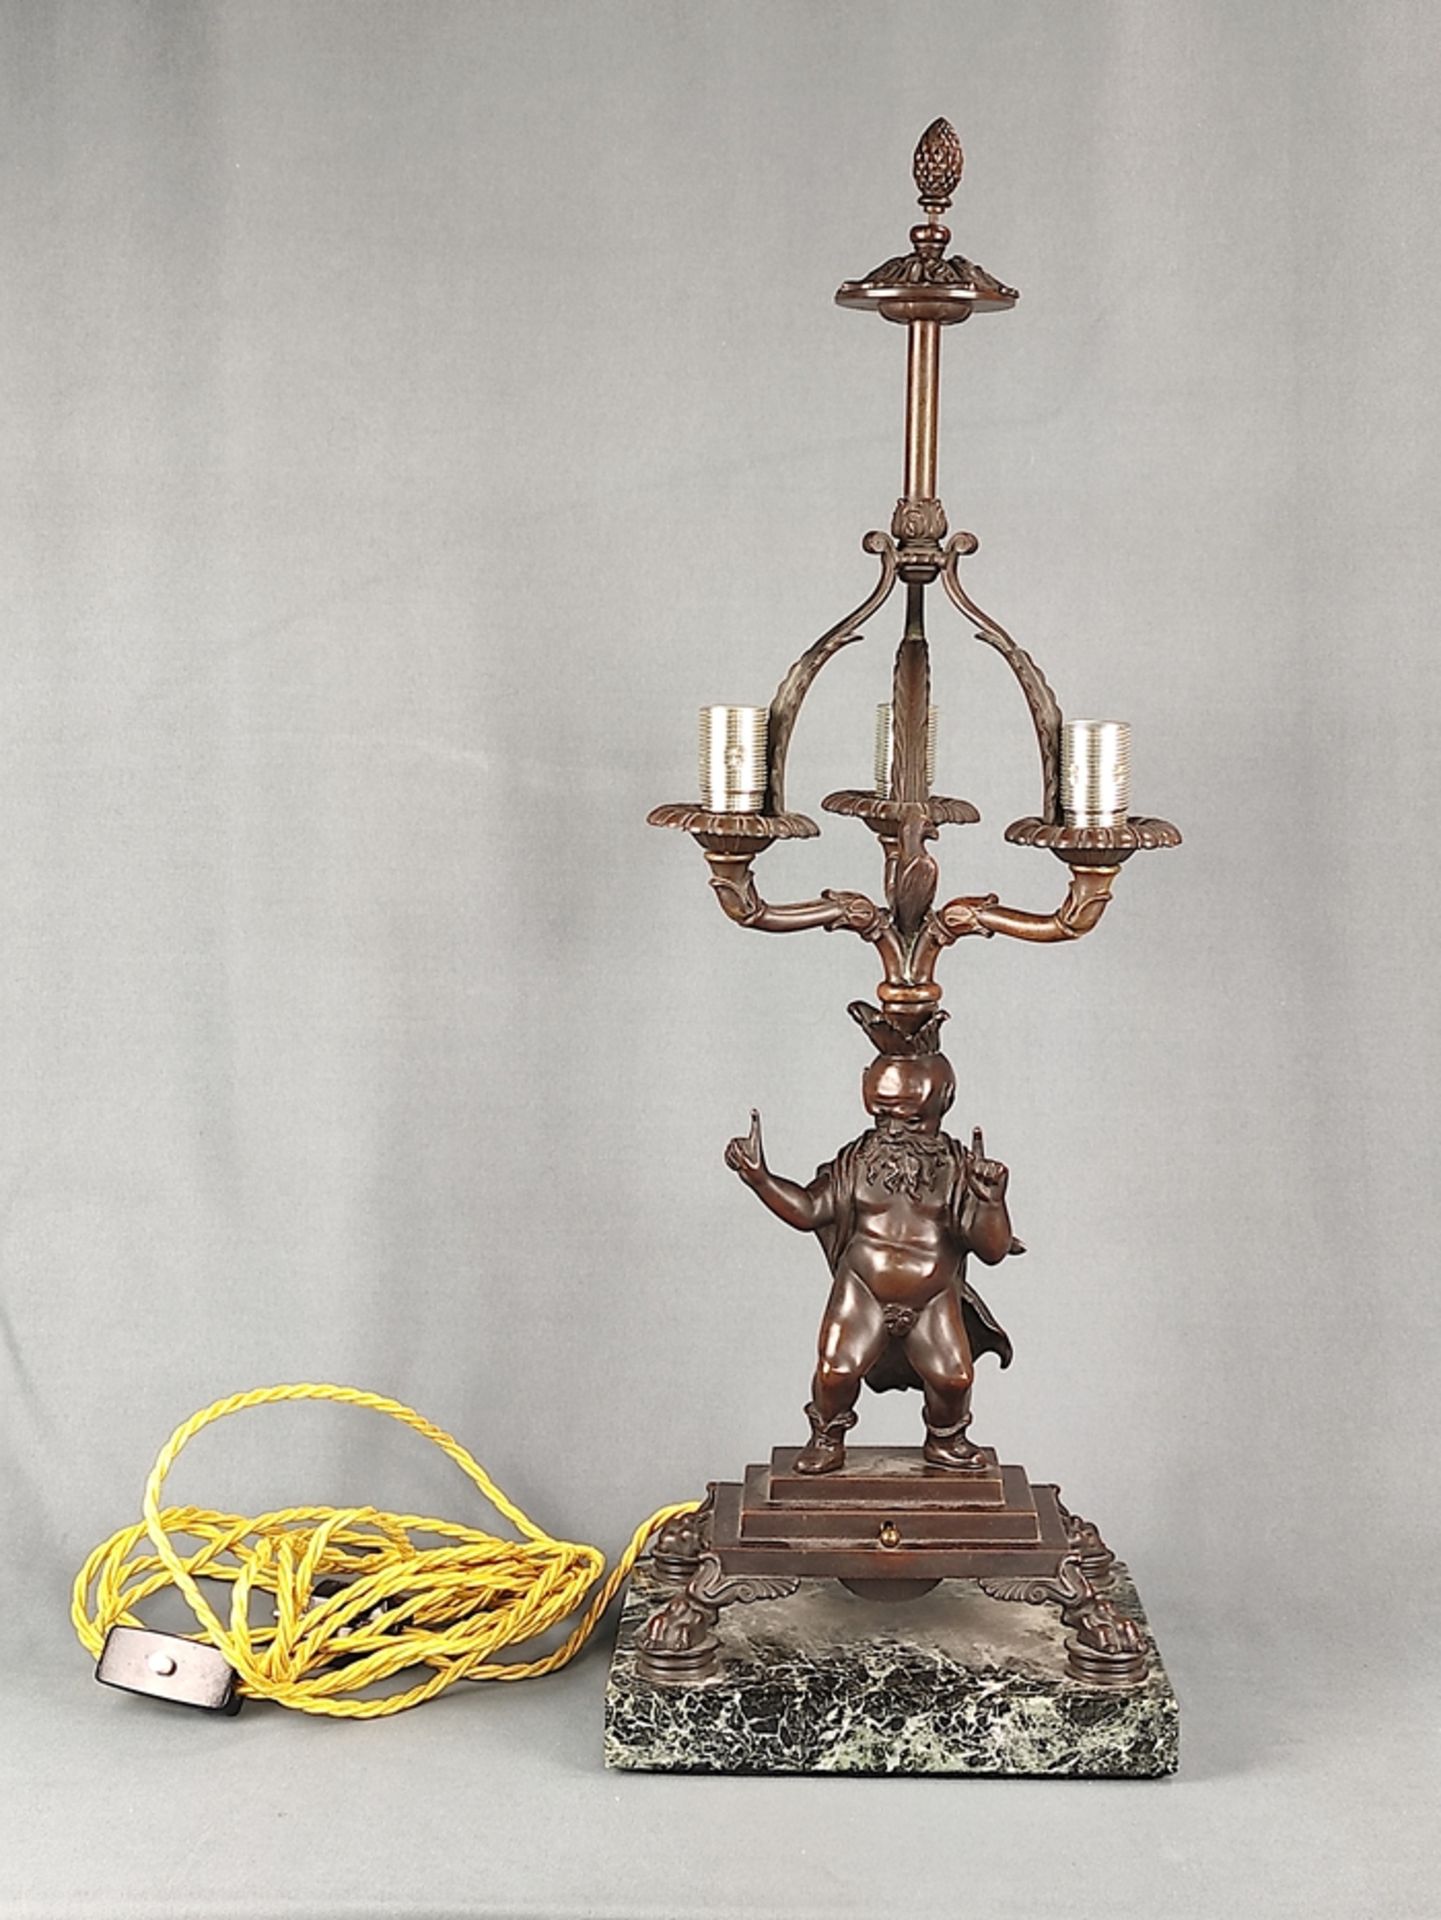 Bronzelampe "Faun", erste Hälfte 20. Jahrhundert, elektrisch, rechteckige Marmorplinthe, darüber ge - Bild 2 aus 4